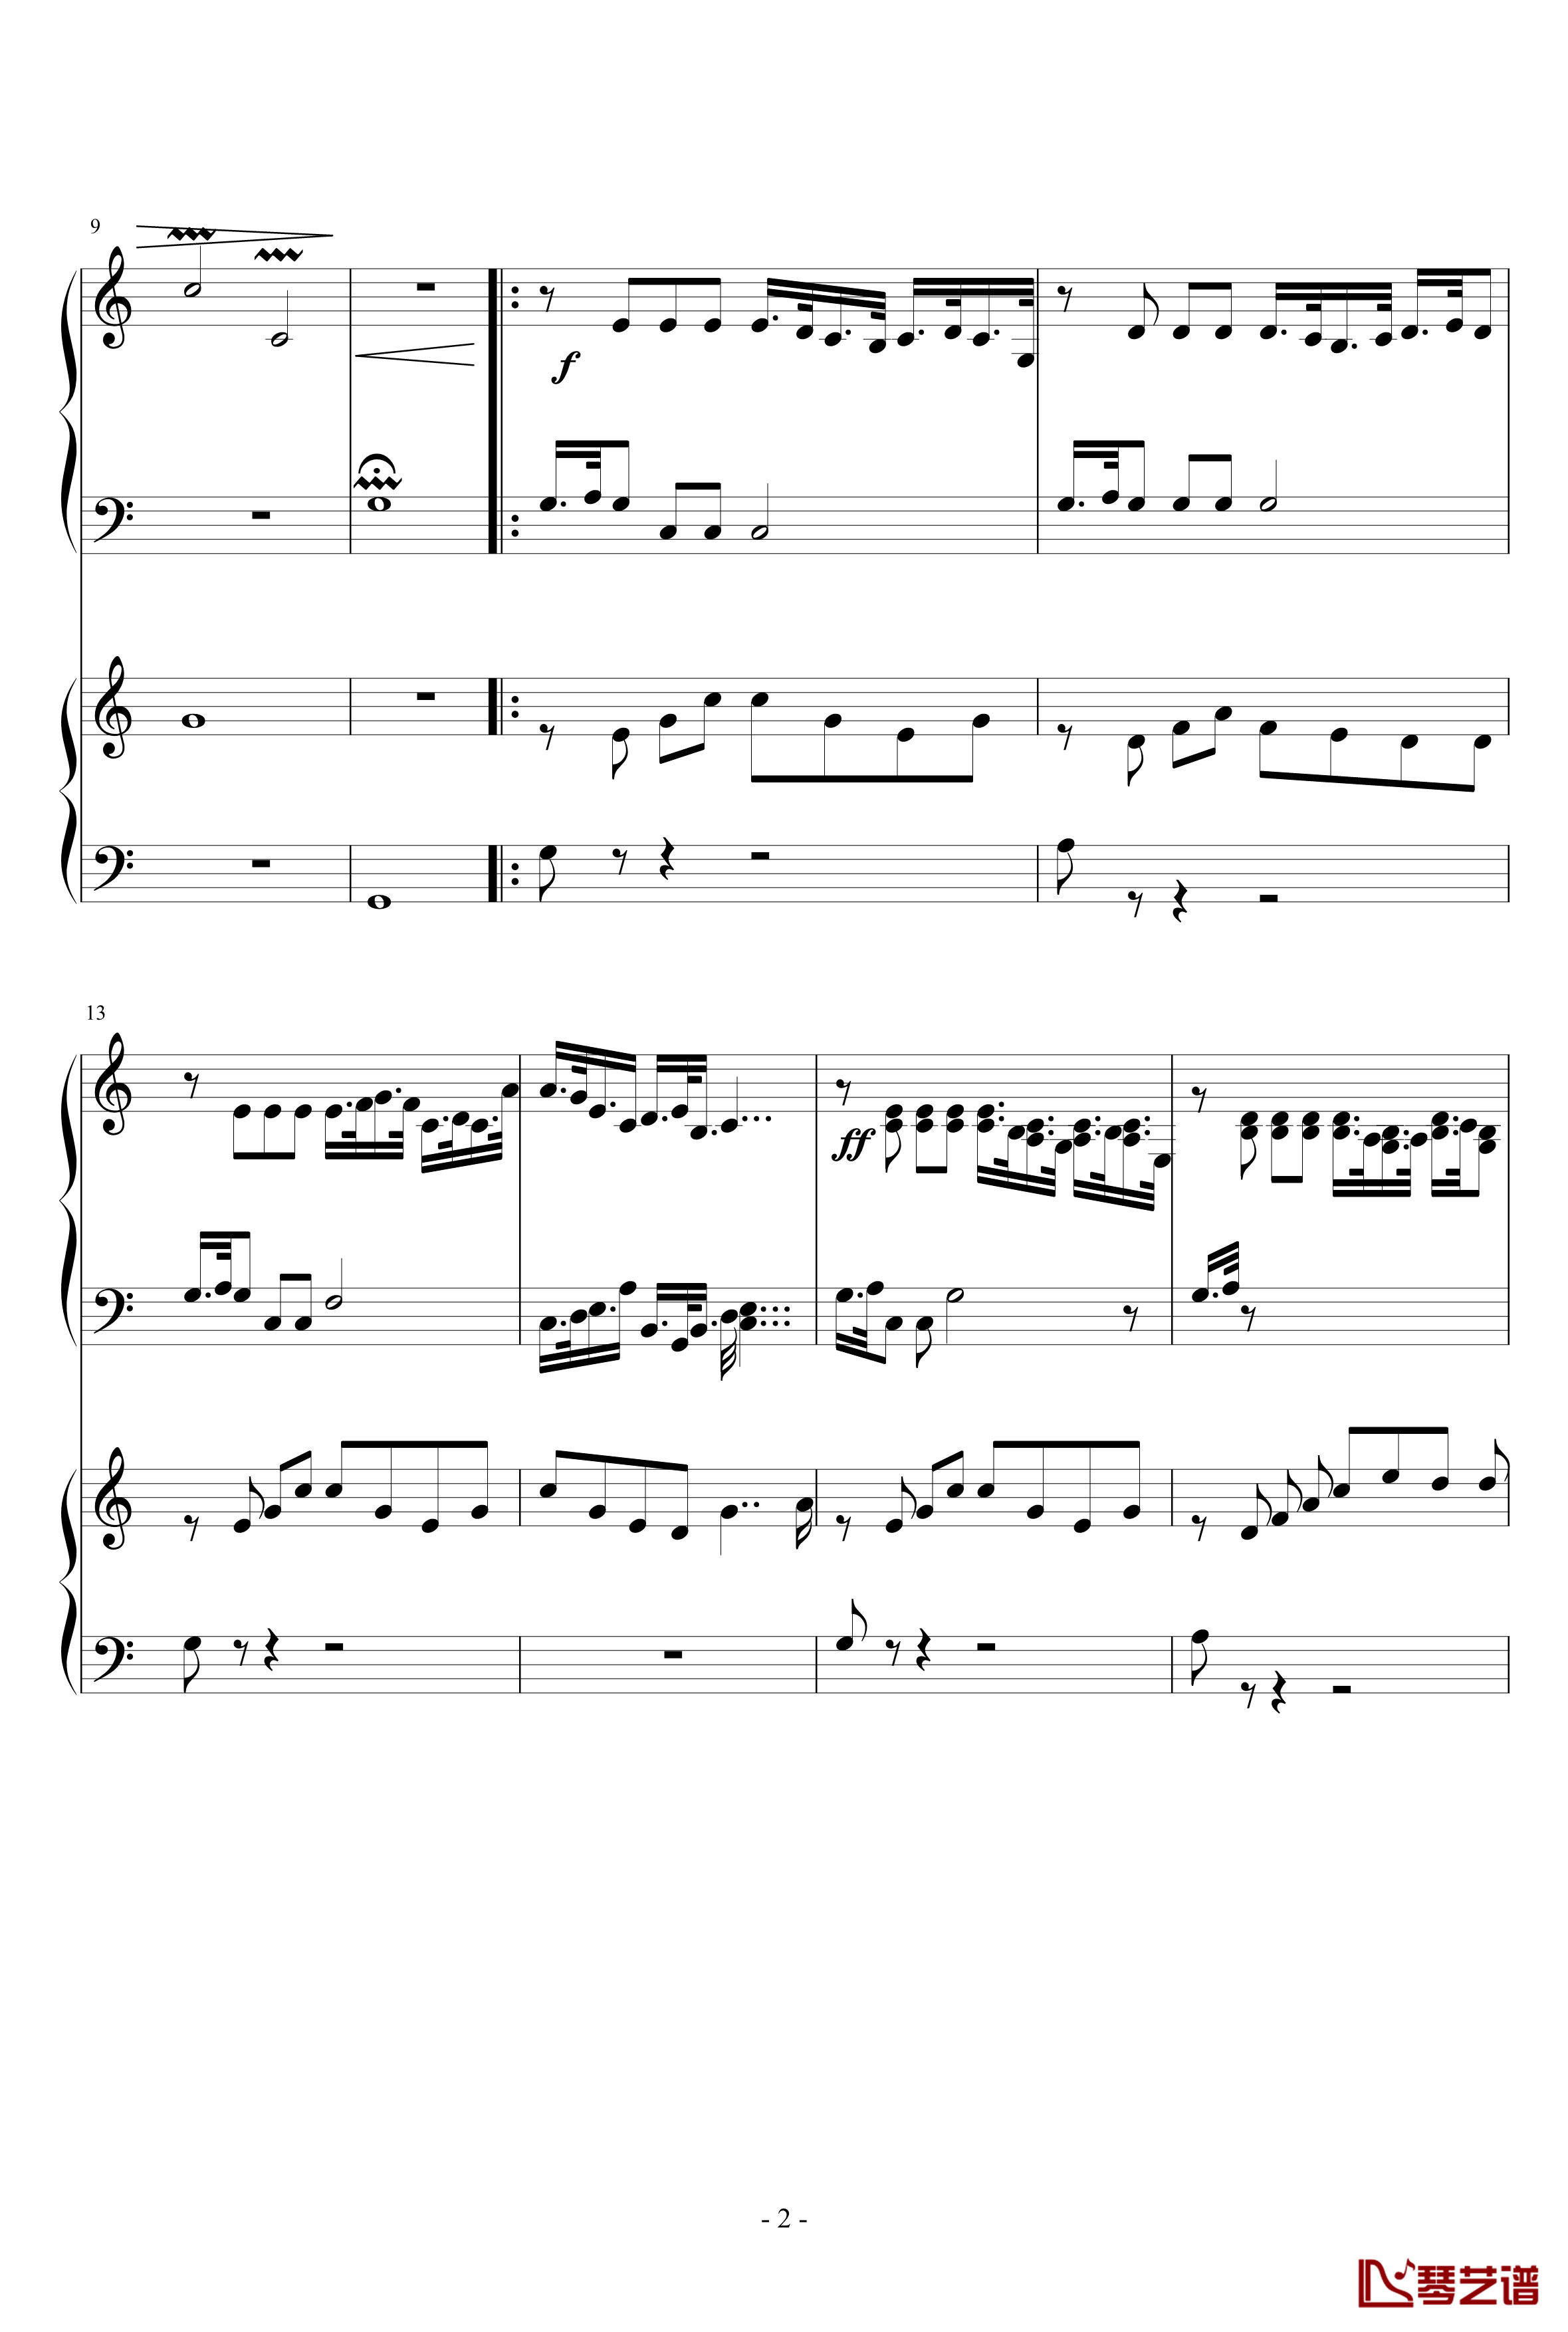 Economelody钢琴谱-小提琴协奏曲-gyc5986520152